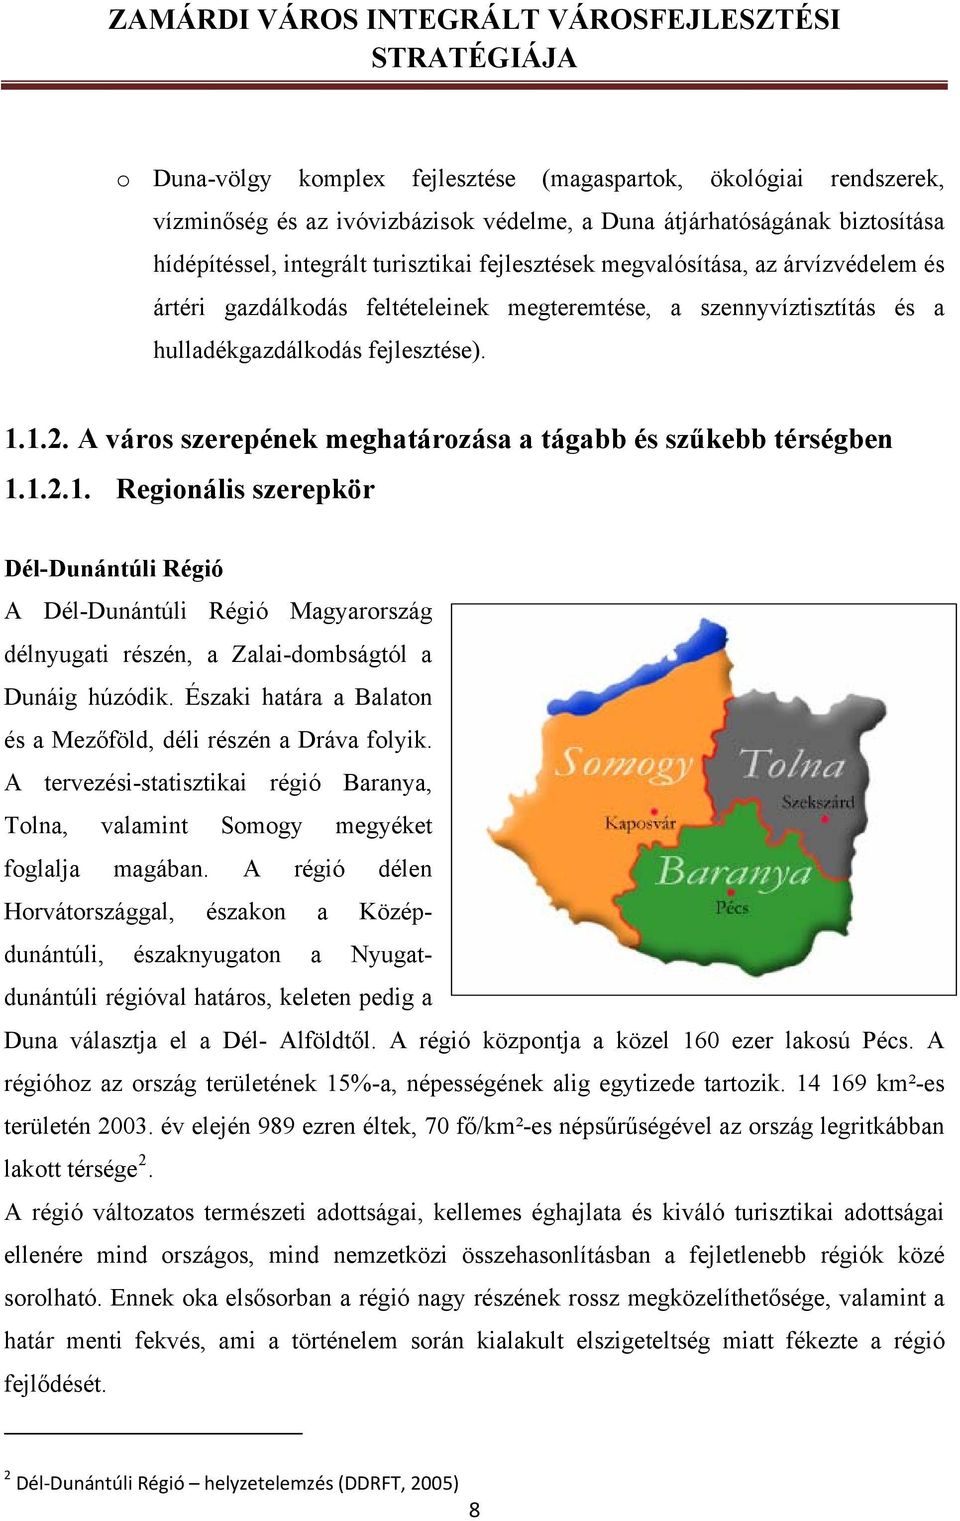 A város szerepének meghatározása a tágabb és szűkebb térségben 1.1.2.1. Regionális szerepkör Dél-Dunántúli Régió A Dél-Dunántúli Régió Magyarország délnyugati részén, a Zalai-dombságtól a Dunáig húzódik.